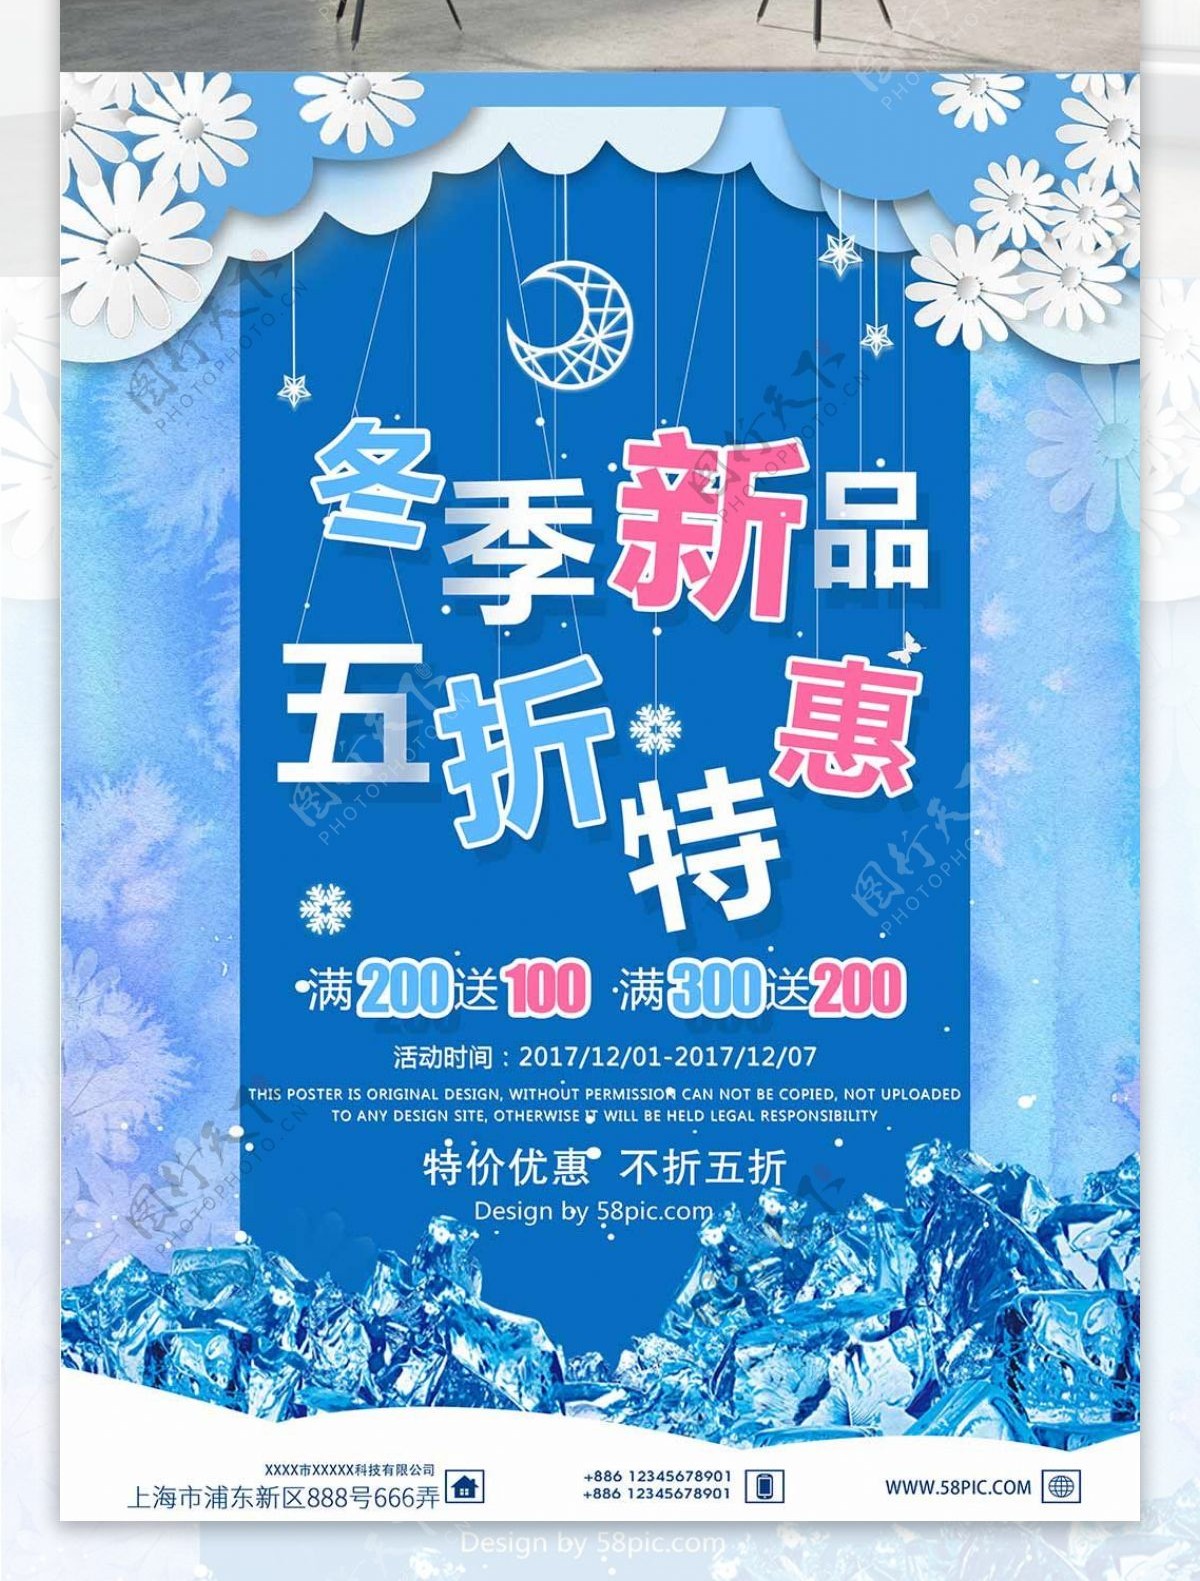 冬季新品五折特惠蓝色提线字促销海报